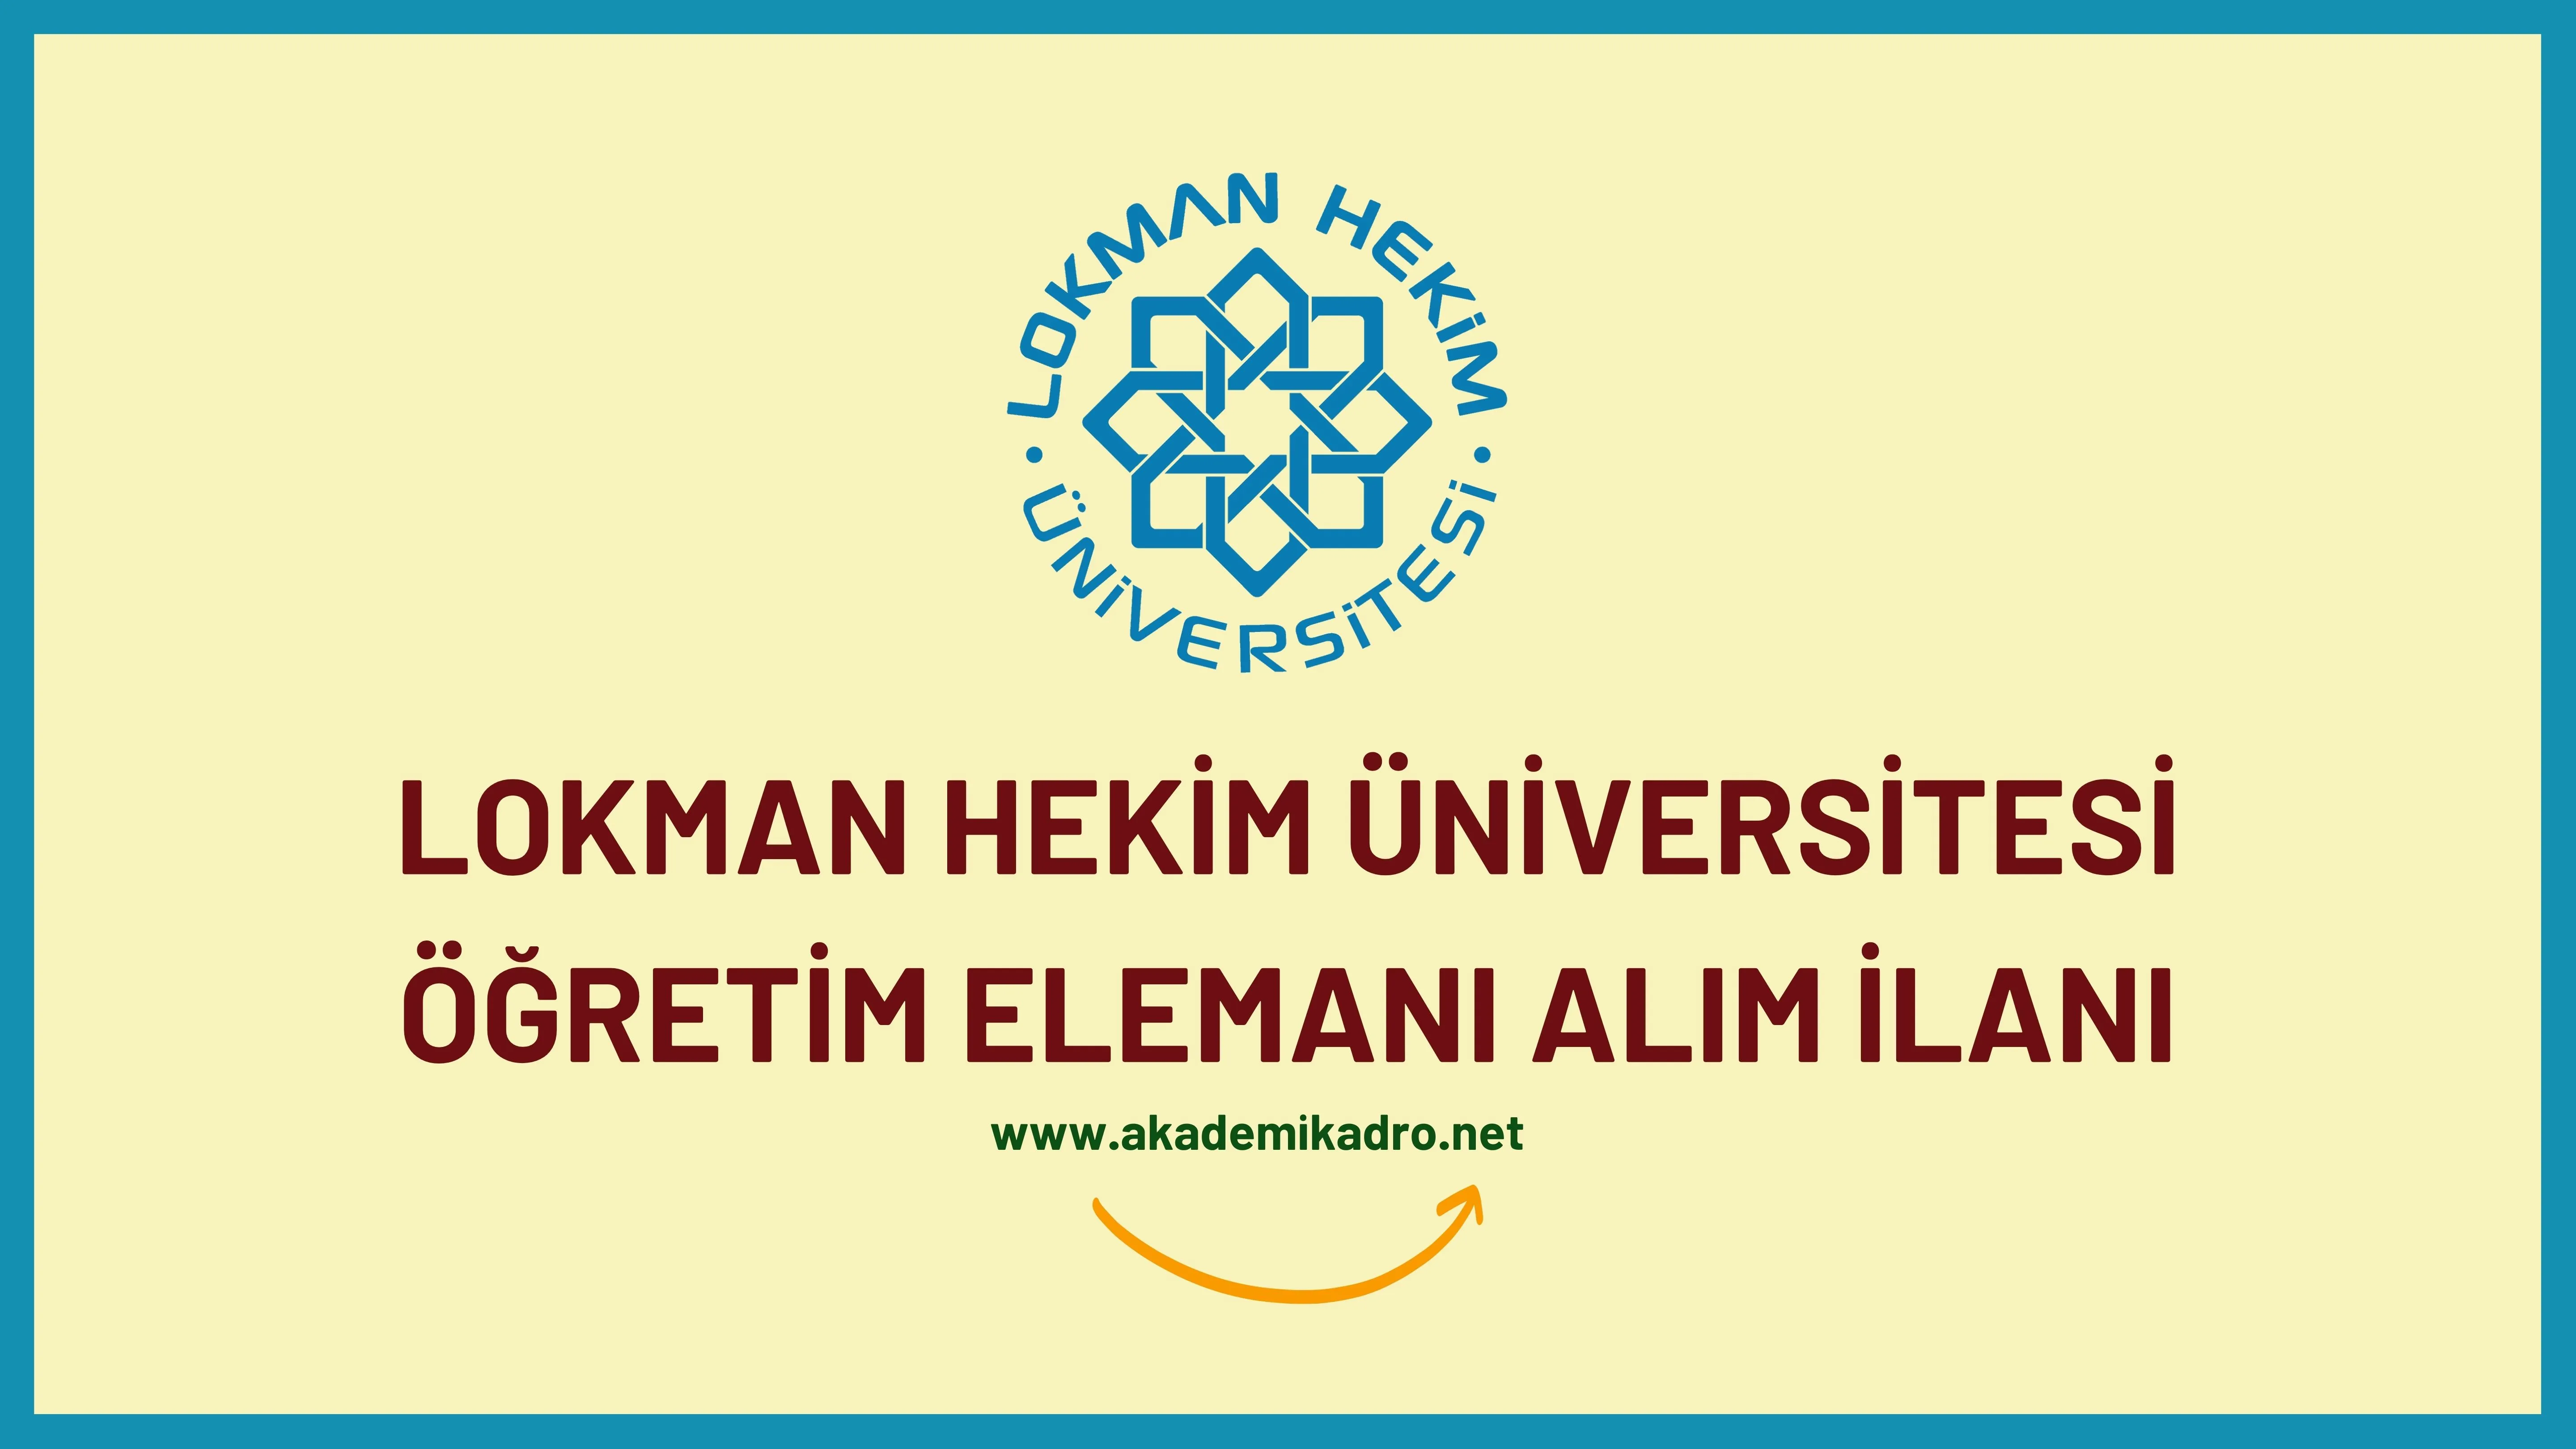 Lokman Hekim Üniversitesi 6 Araştırma Görevlisi, 3 Öğretim görevlisi ve çok sayıda akademik personel alacak.